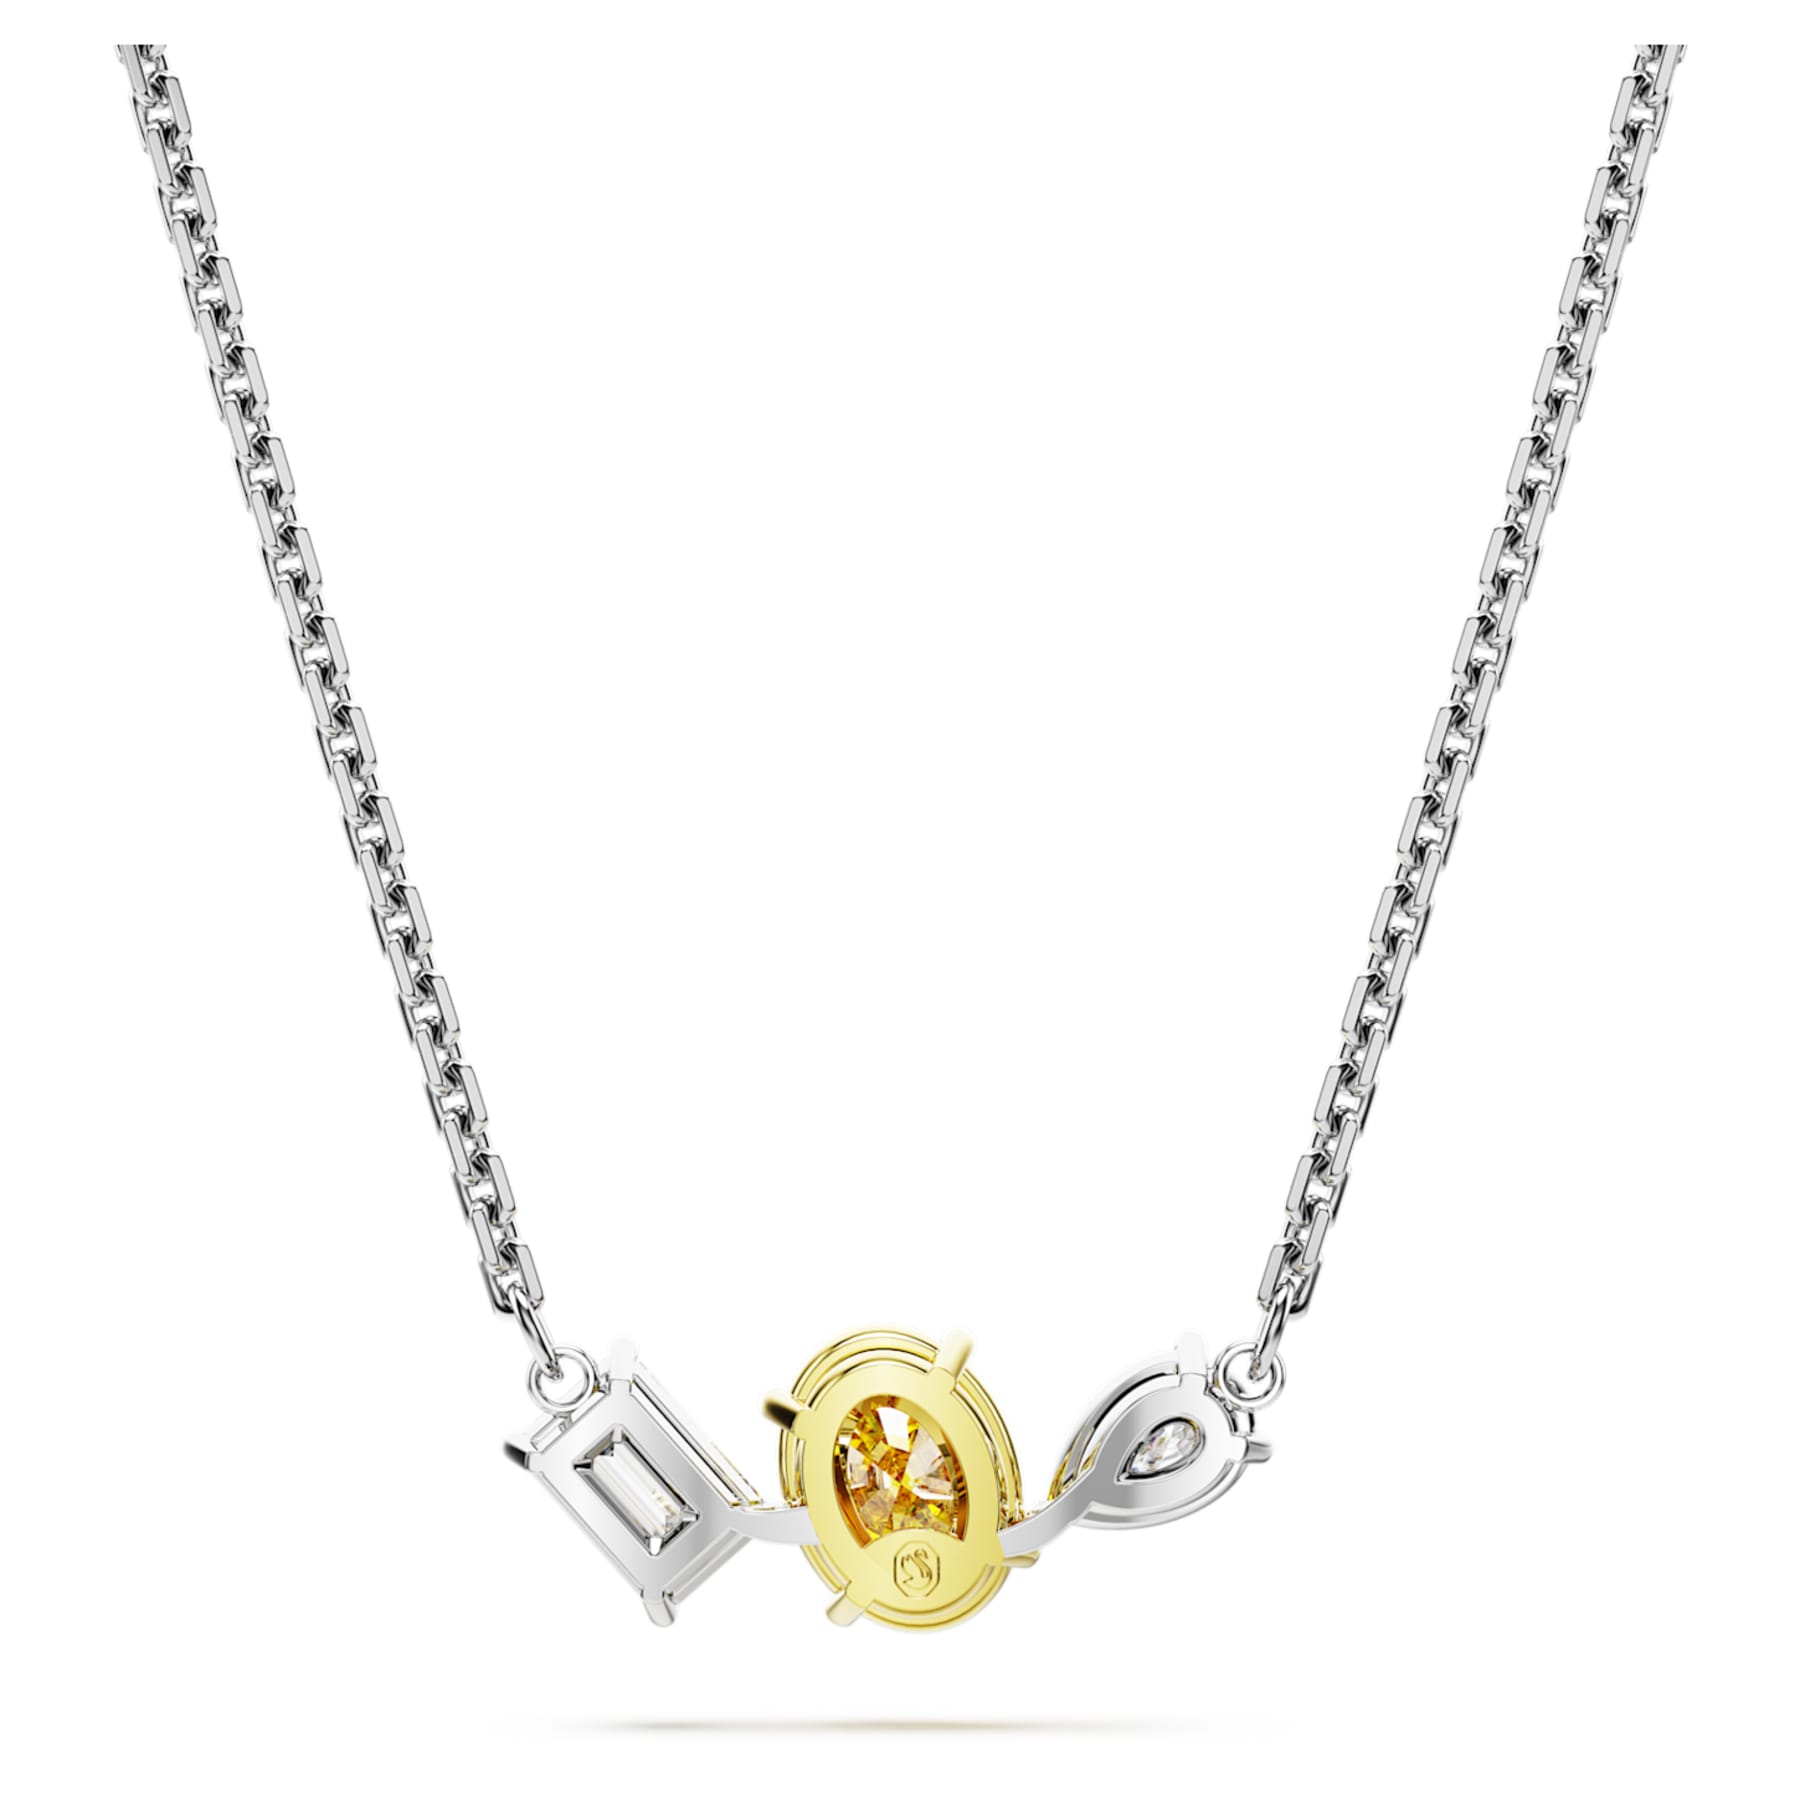 Mesmera – Gelbes Silber – Halskette – Swarovski